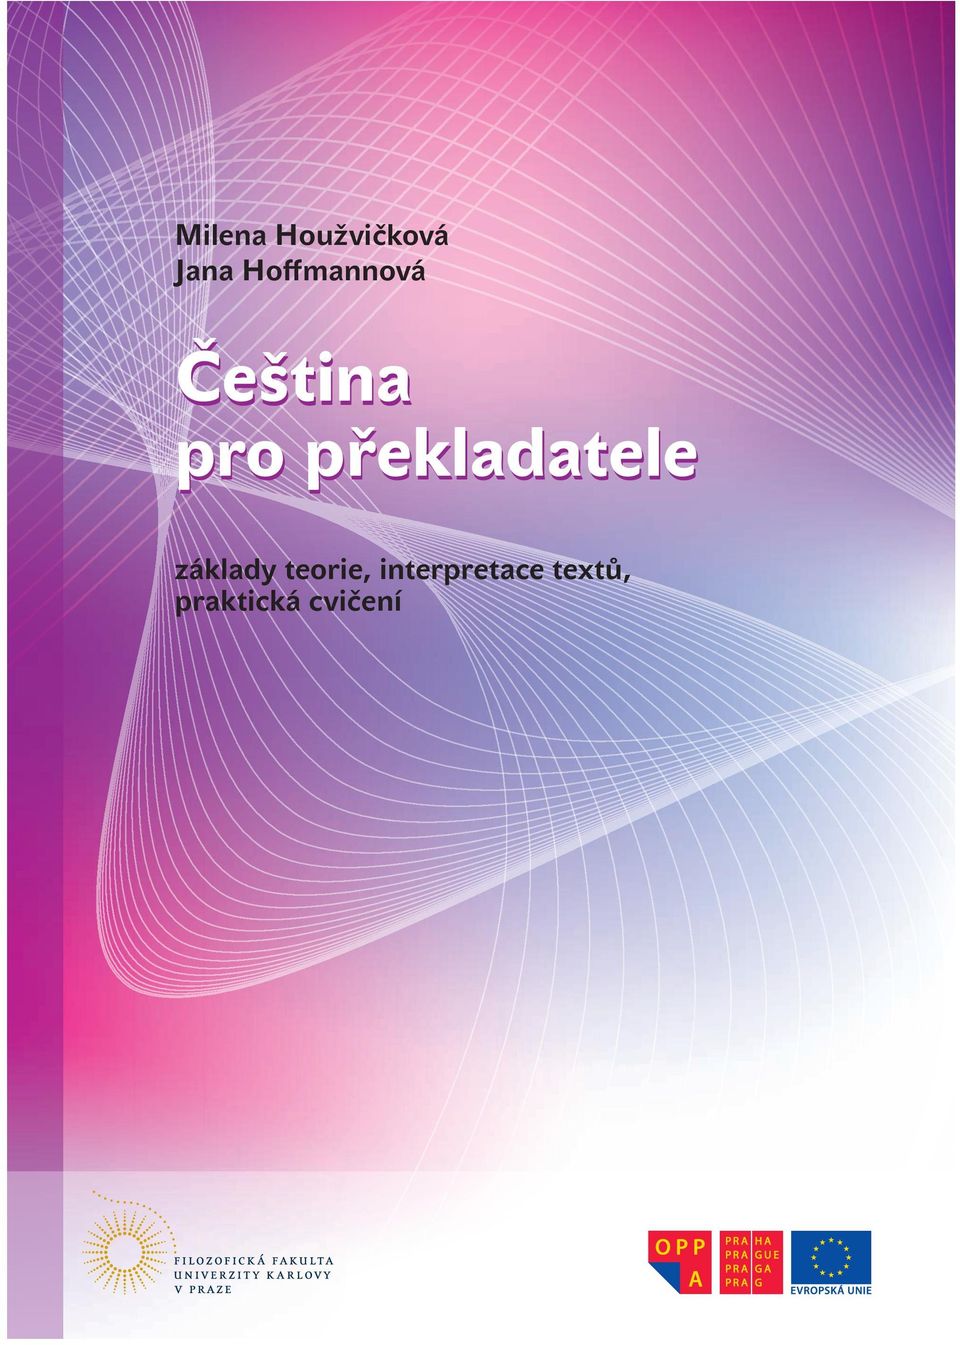 Většina cvičení vychází z textů publikovaných v českém tisku, také například z dokumentů Evropské unie; zachycují tedy aktuální podobu češtiny s jejími současnými proměnami.